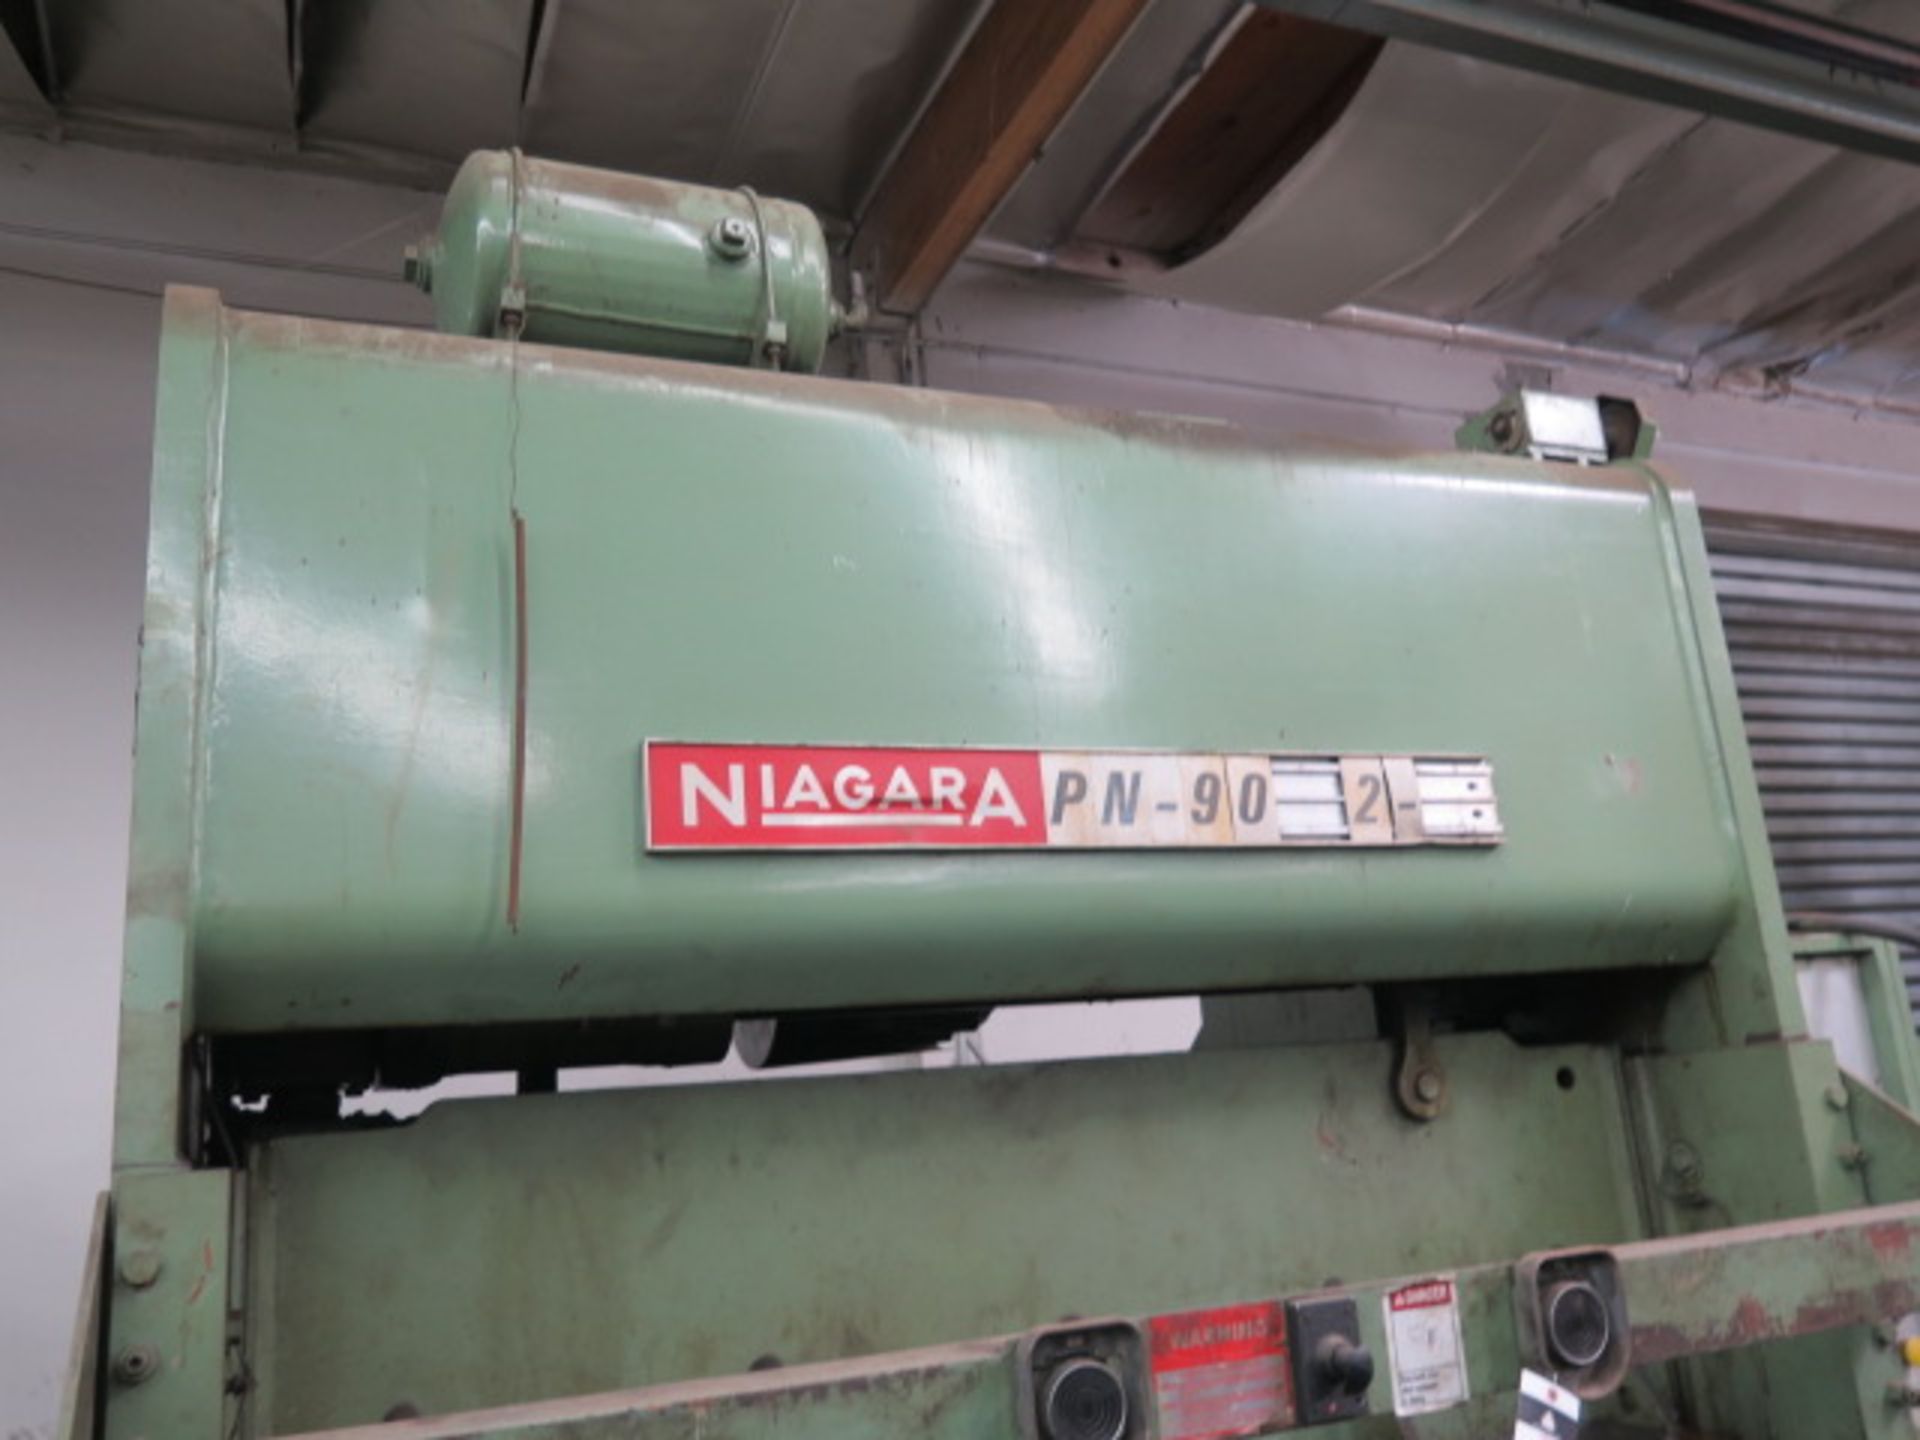 Niagara PN-90-72-30 90-Ton Stamping Press s/n 44398 w/ 3” Stroke, 5” Ram Adj., 14” Shut Height, - Image 3 of 10